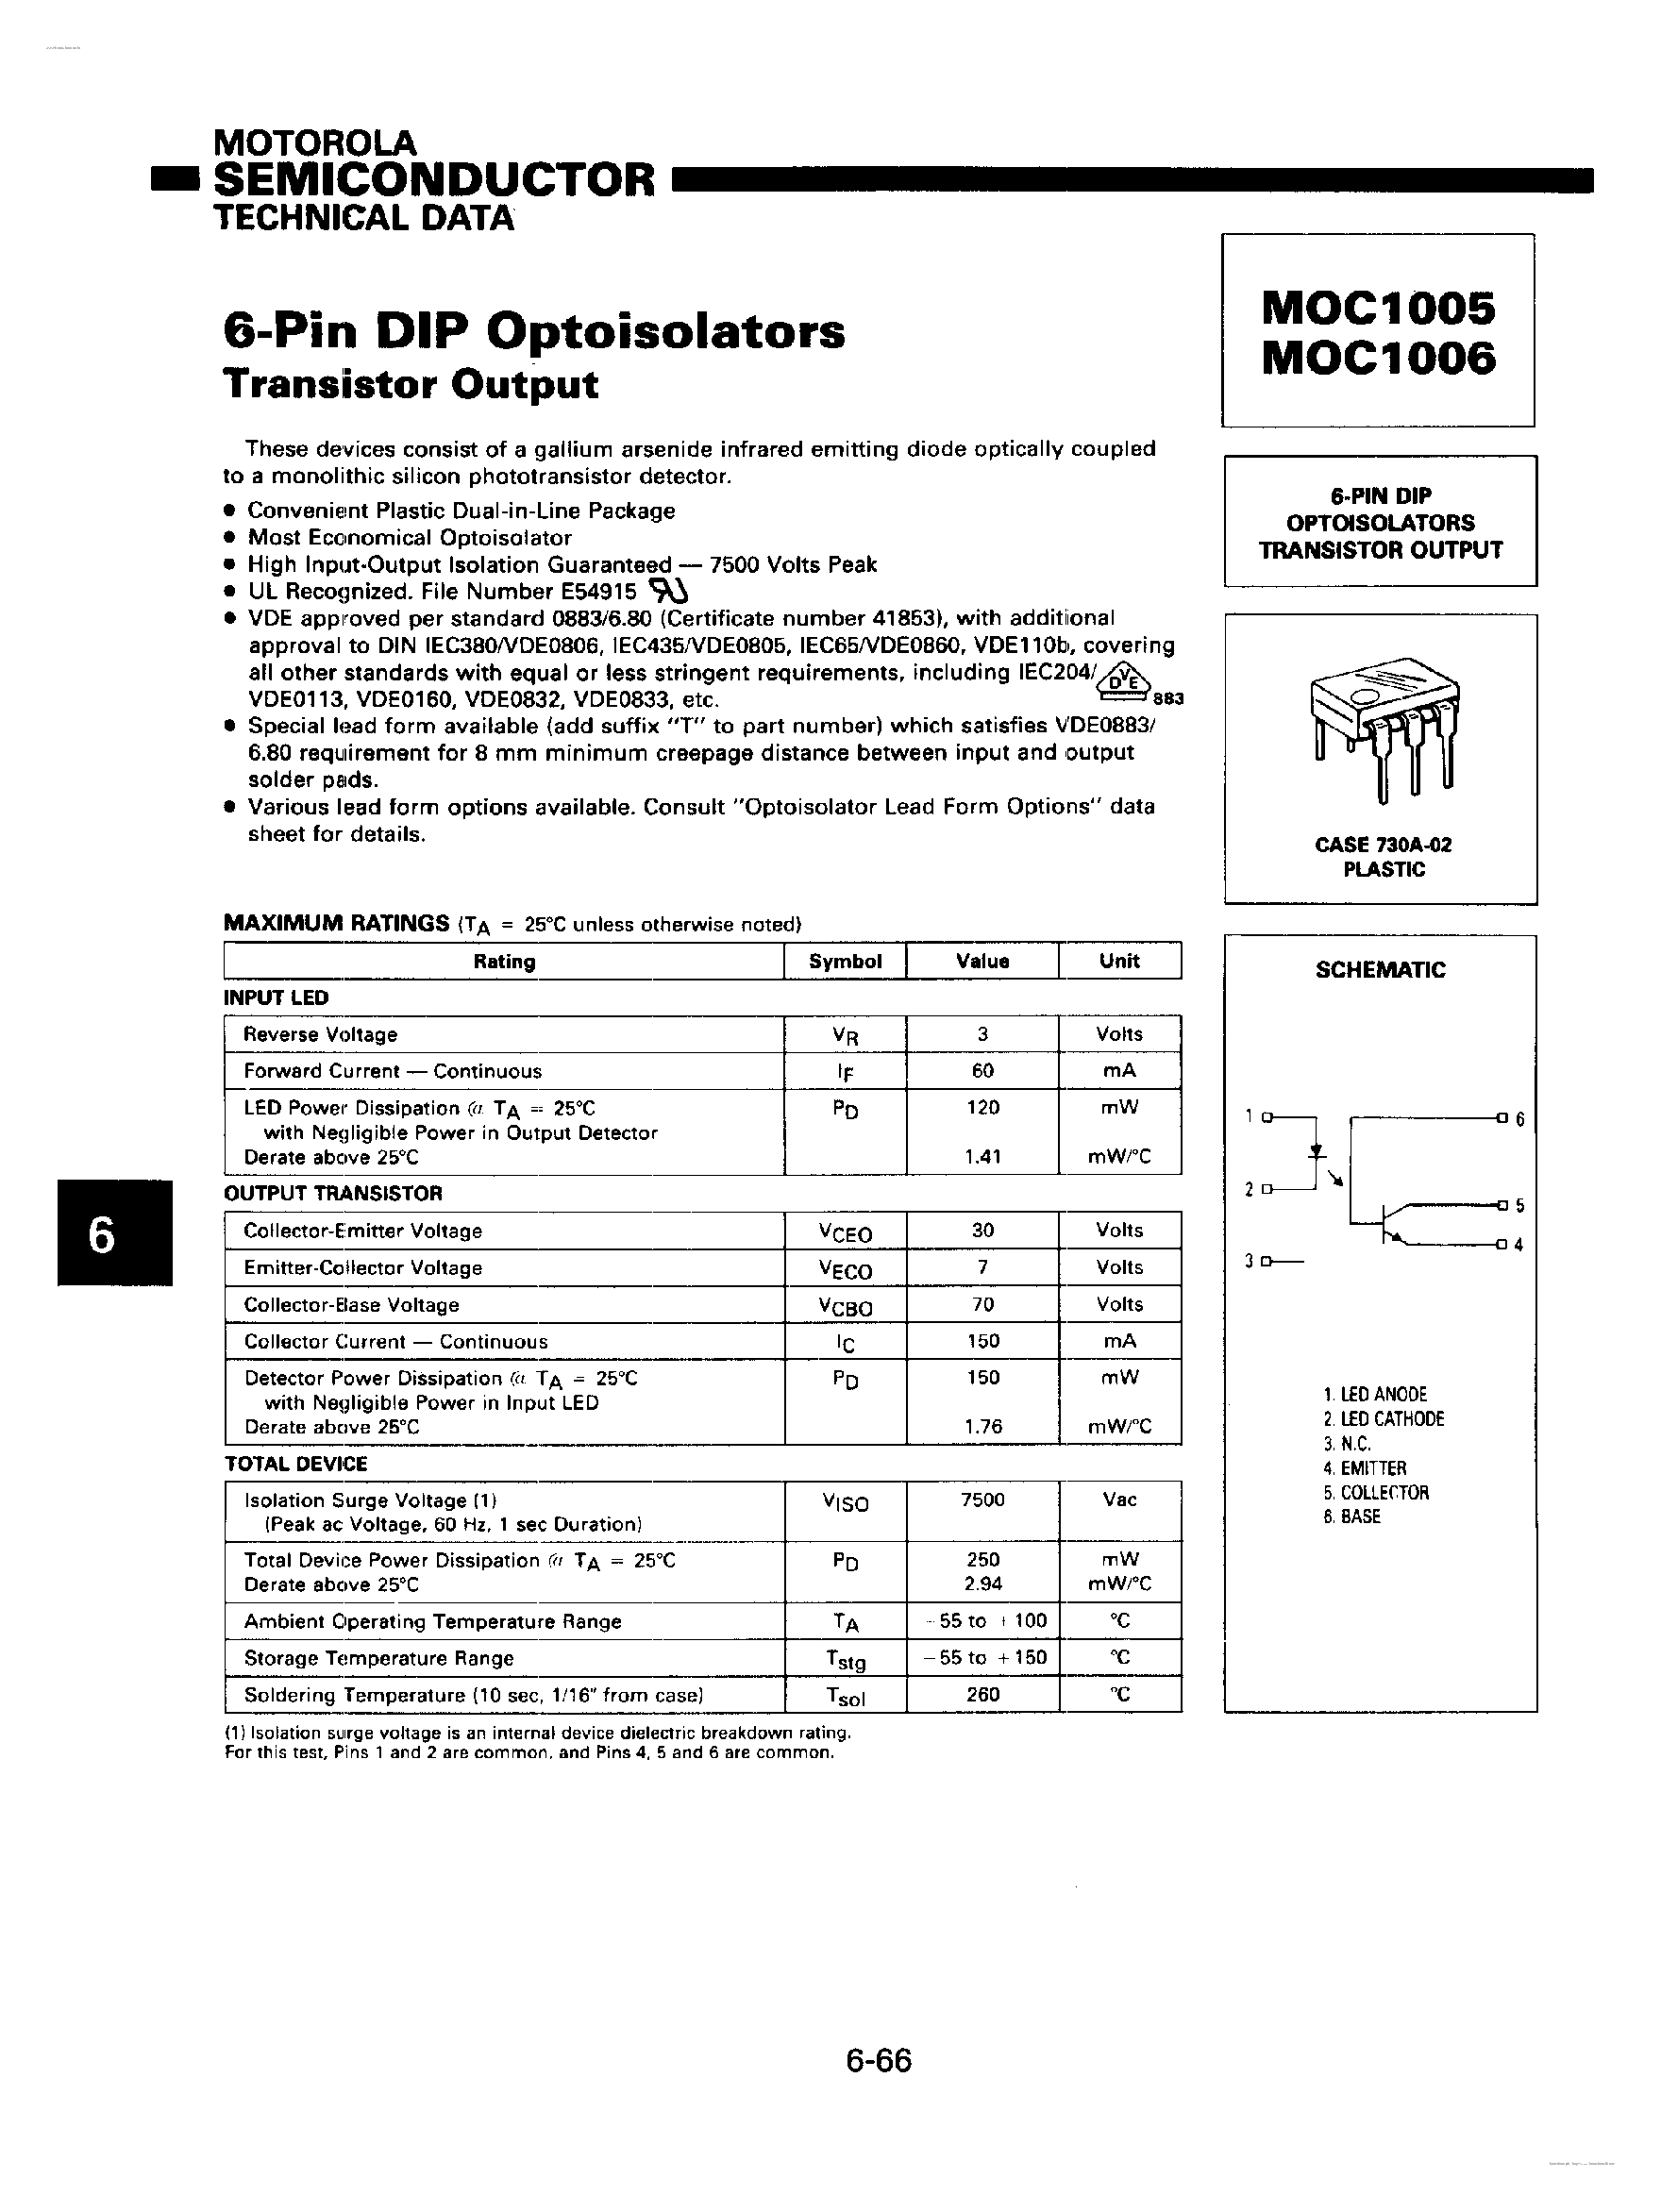 Даташит MOC1005 - (MOC1005 / MOC1006) 6-Pin DIP Optoisolators страница 1